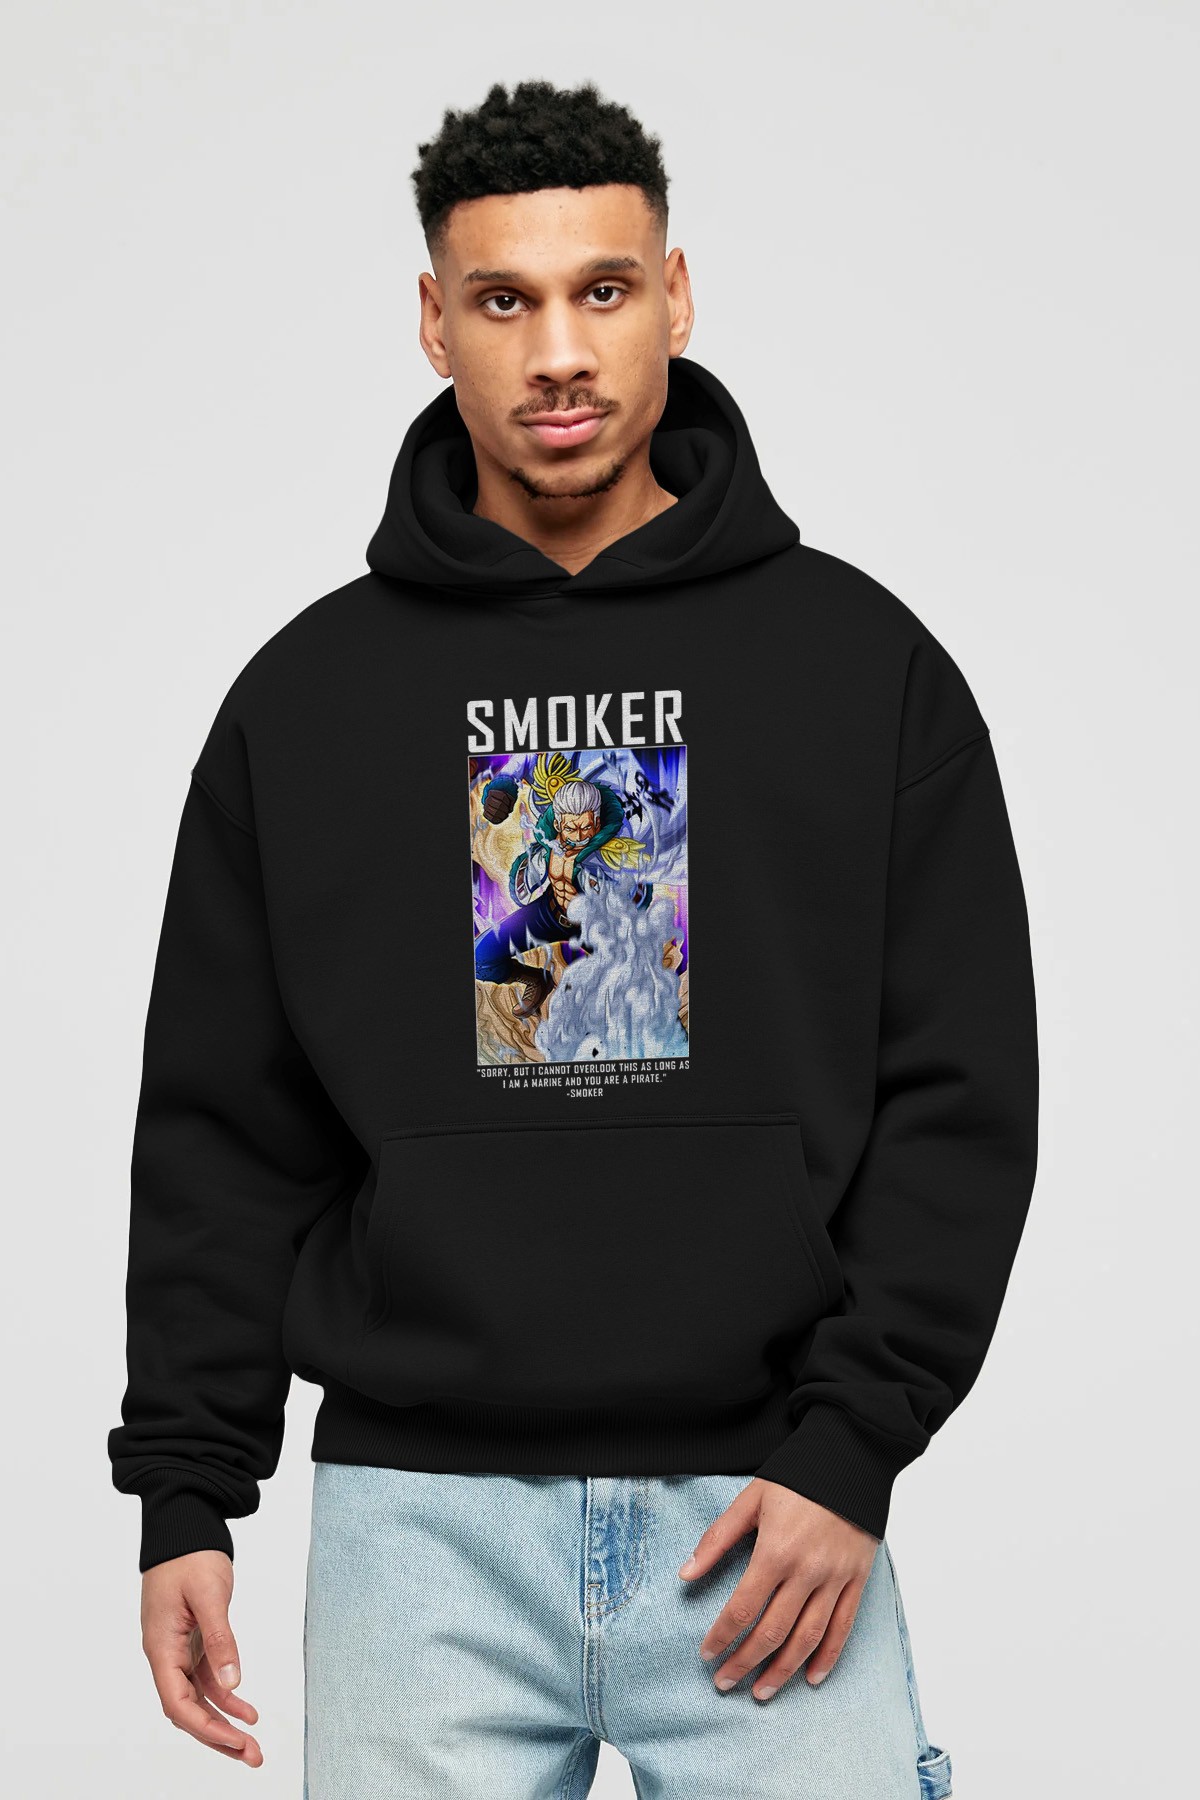 Smoker Anime Ön Baskılı Hoodie Oversize Kapüşonlu Sweatshirt Erkek Kadın Unisex